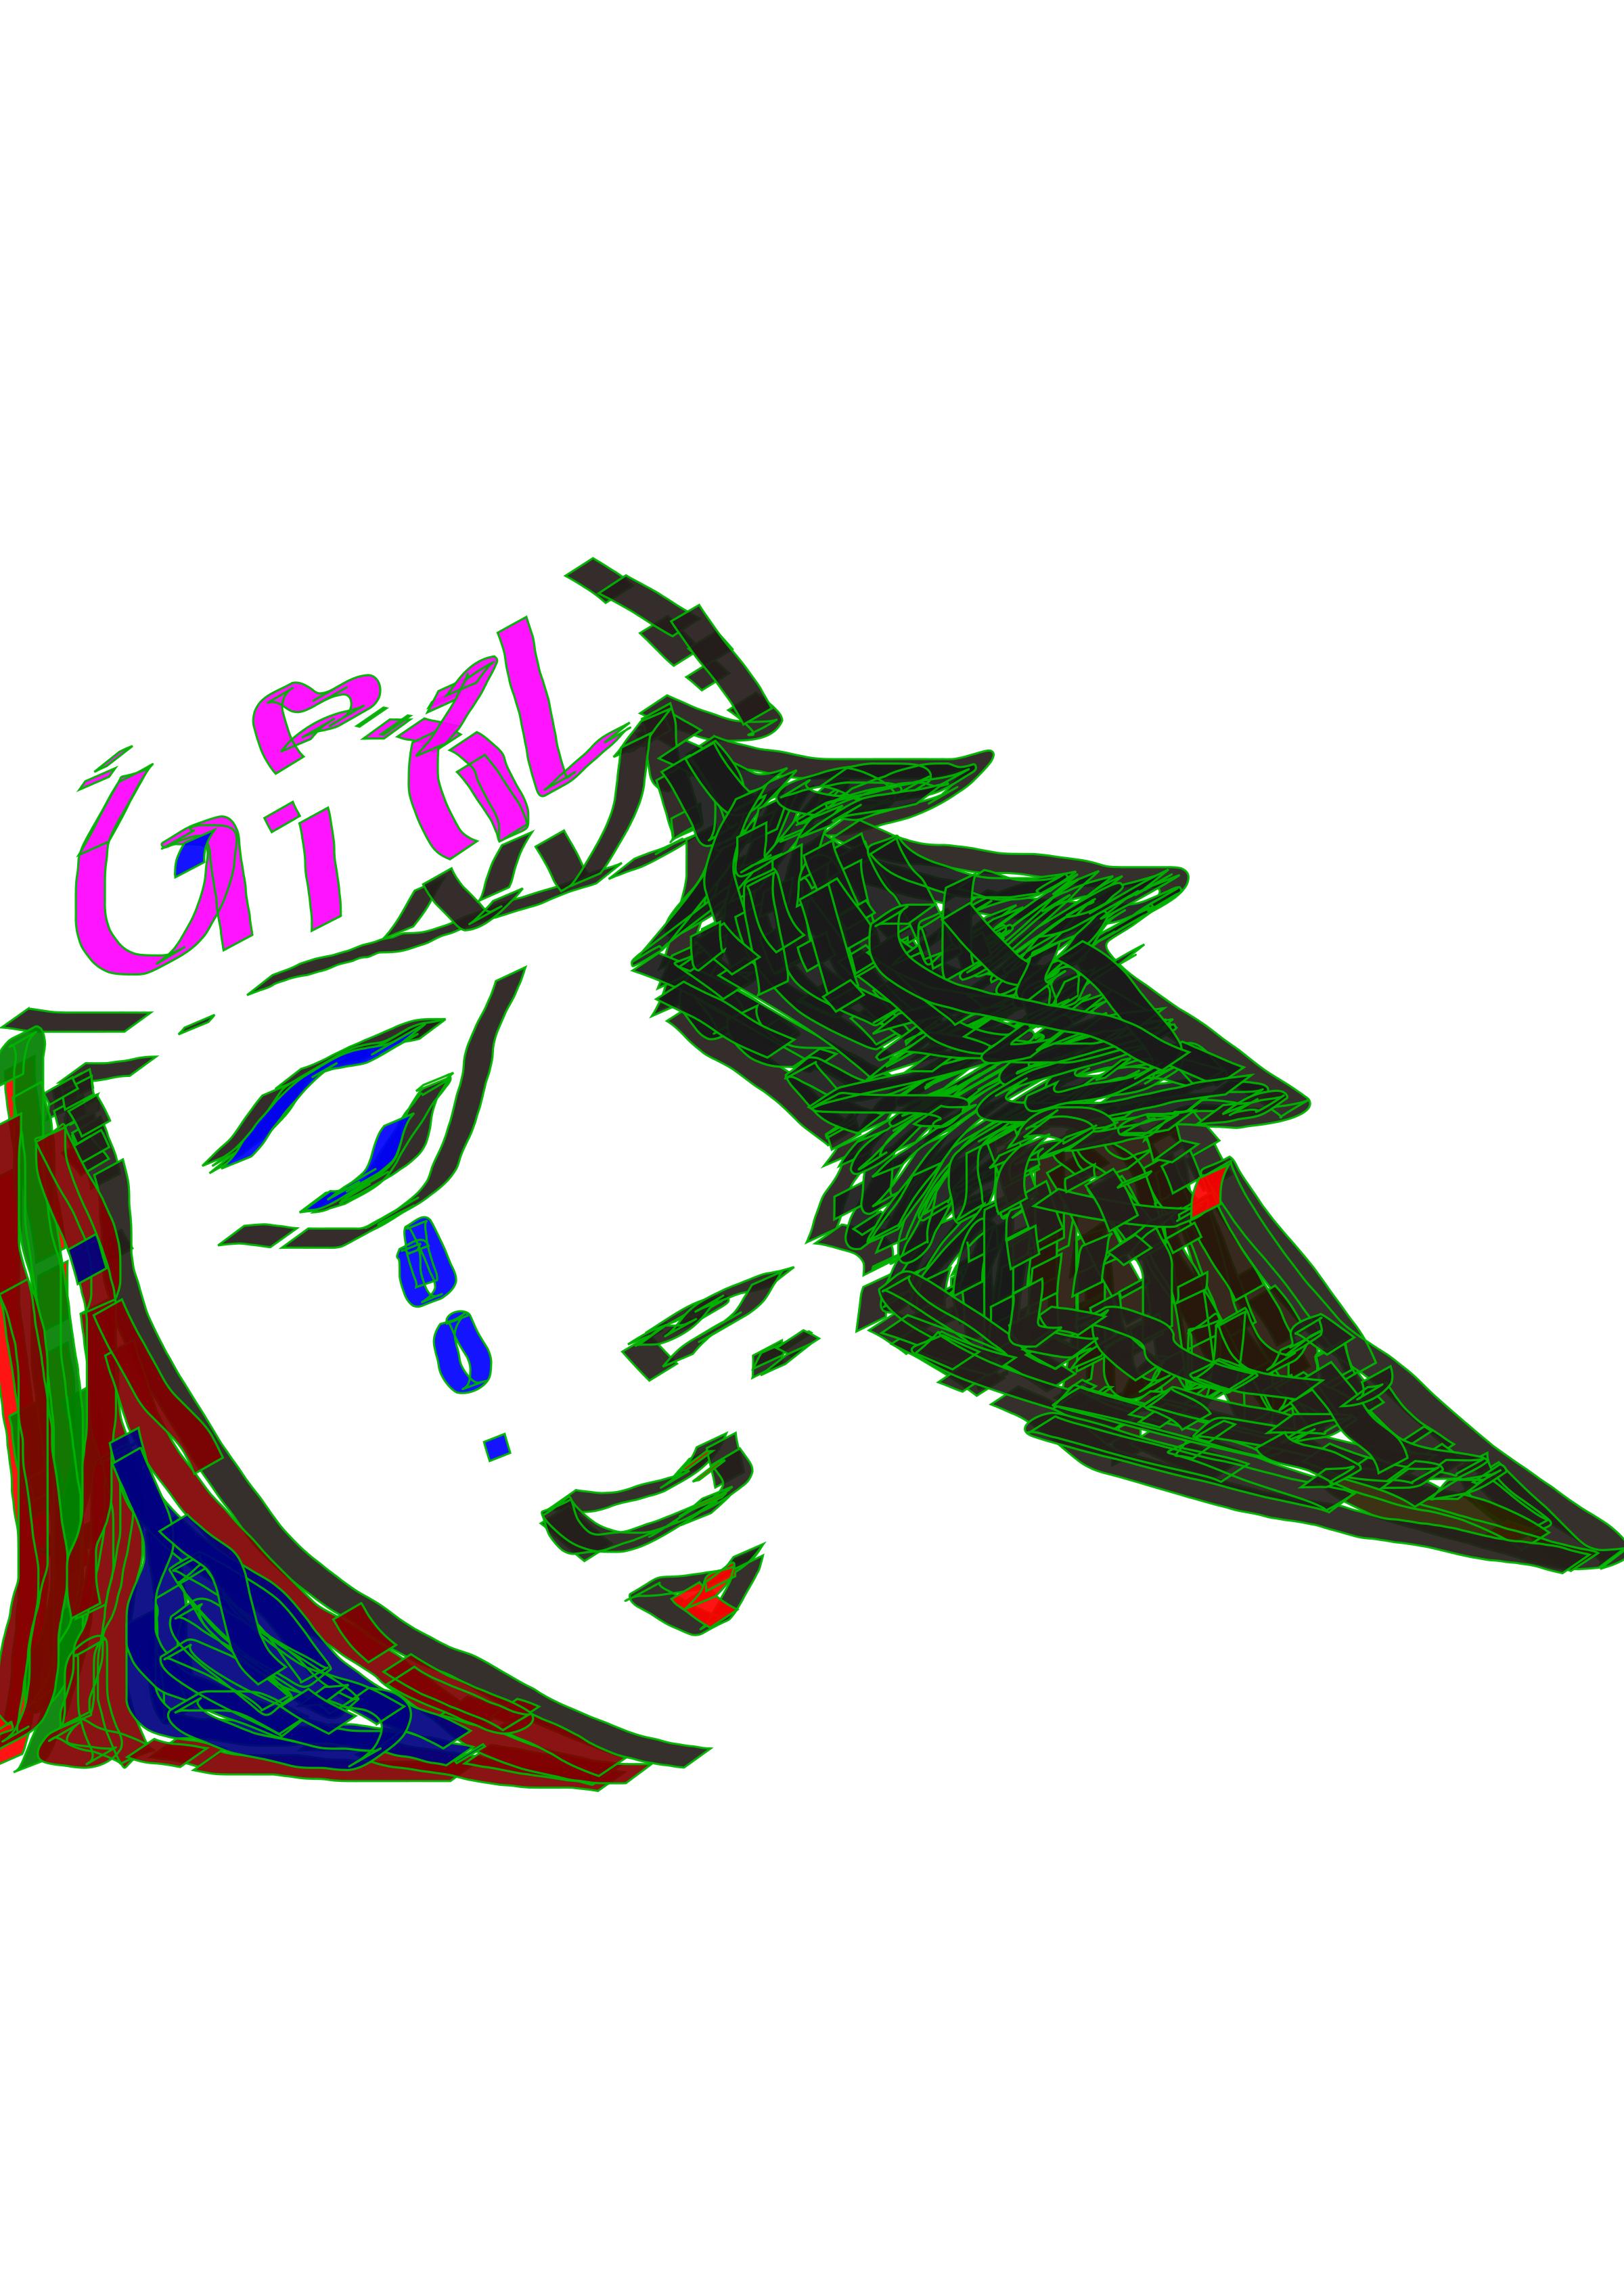 INTERNATIONAL DAY OF GIRL CHILD: HAIL GIRL POWER!